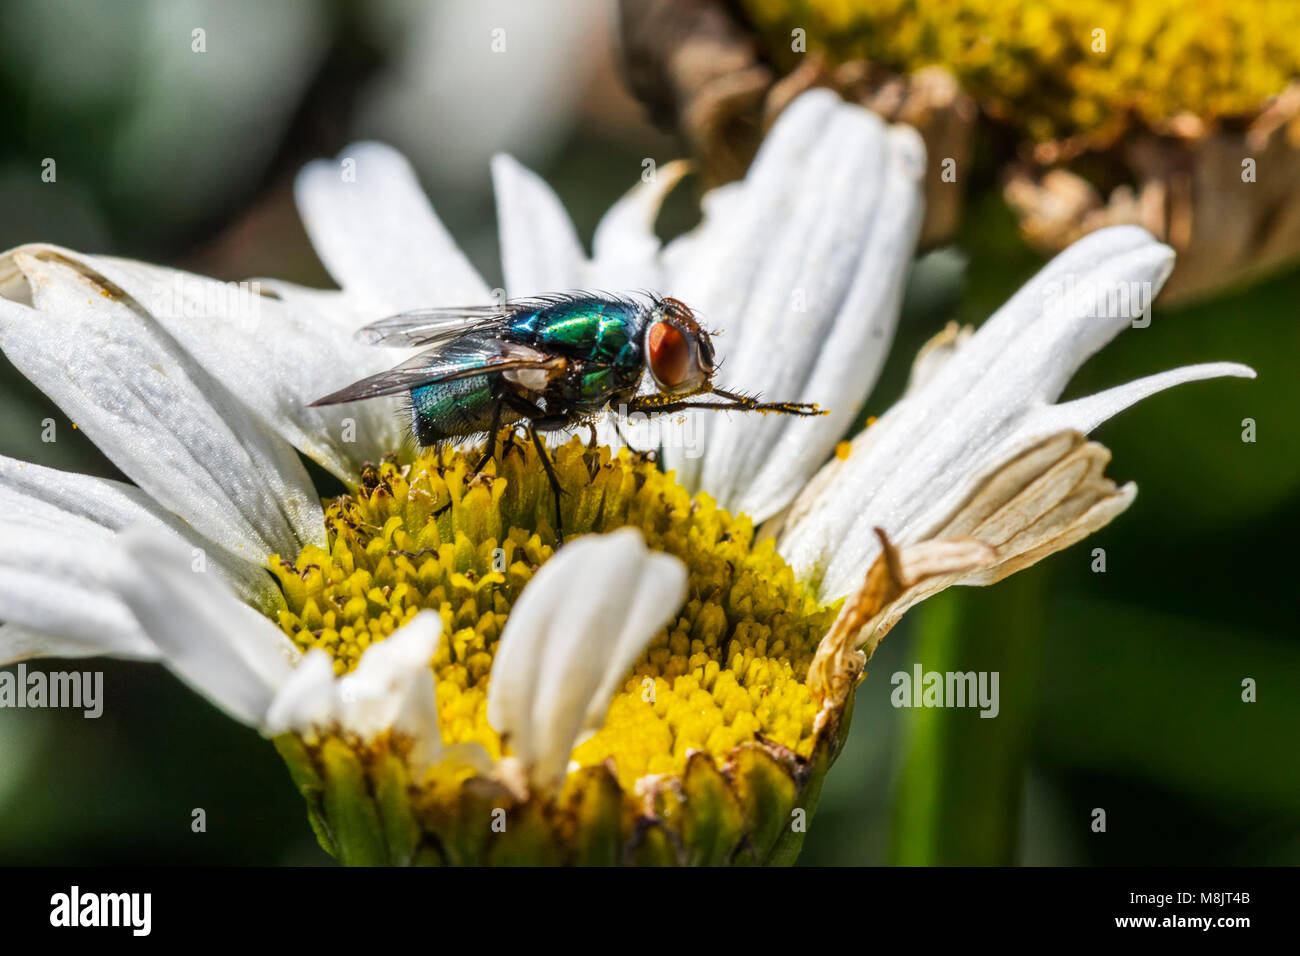 Fly se nourrissant de nectar daisy se frotter les jambes ensemble couvert de pollen dans les jambes tendus tandis que le profil en équilibre sur le centre de la fleur jaune Banque D'Images